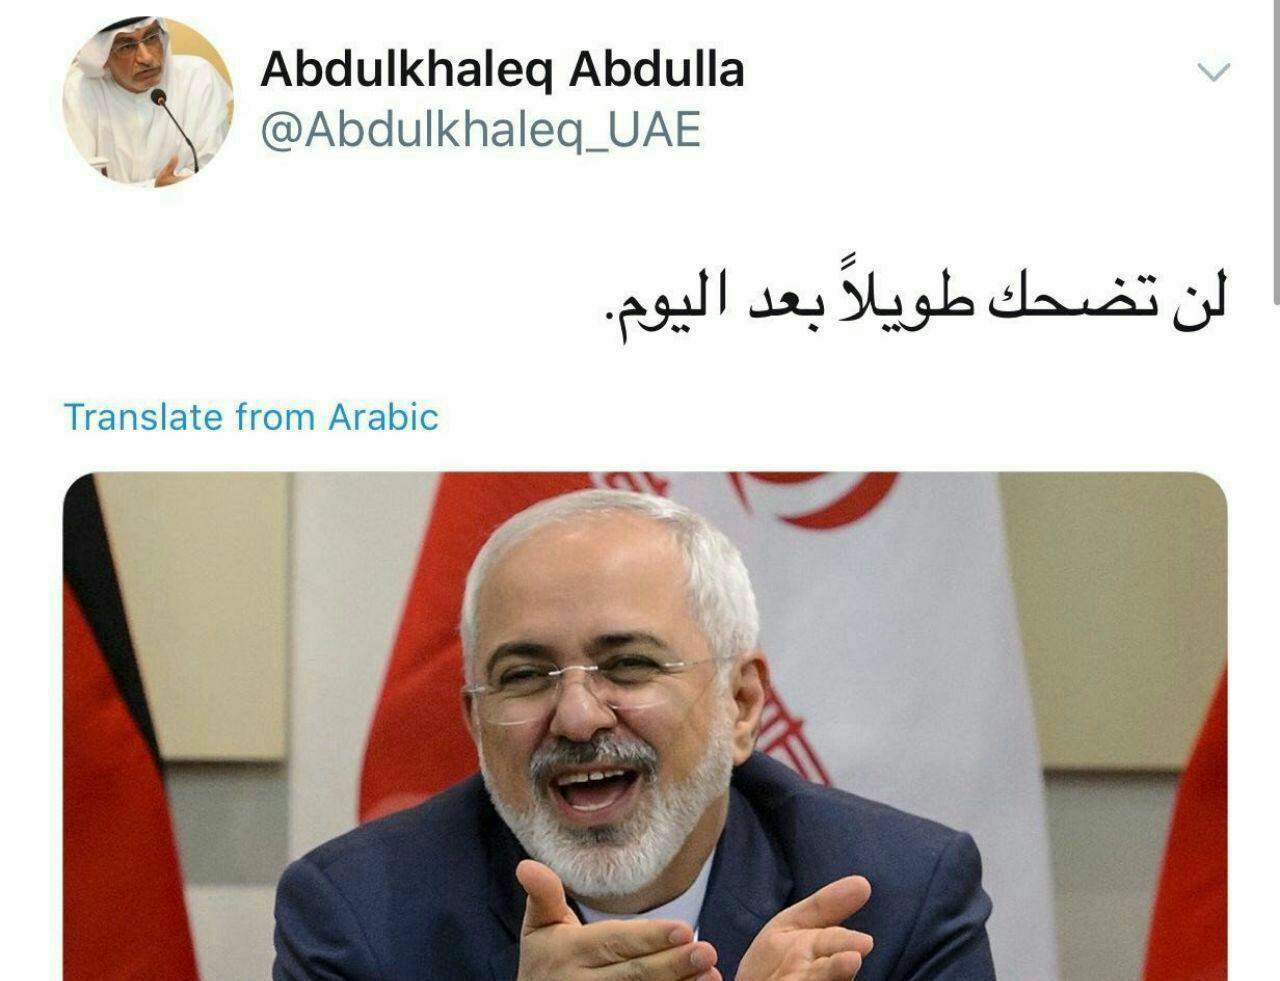 مشاور ولیعهد امارات: آقای ظریف دیگر لبخند نخواهی زد!